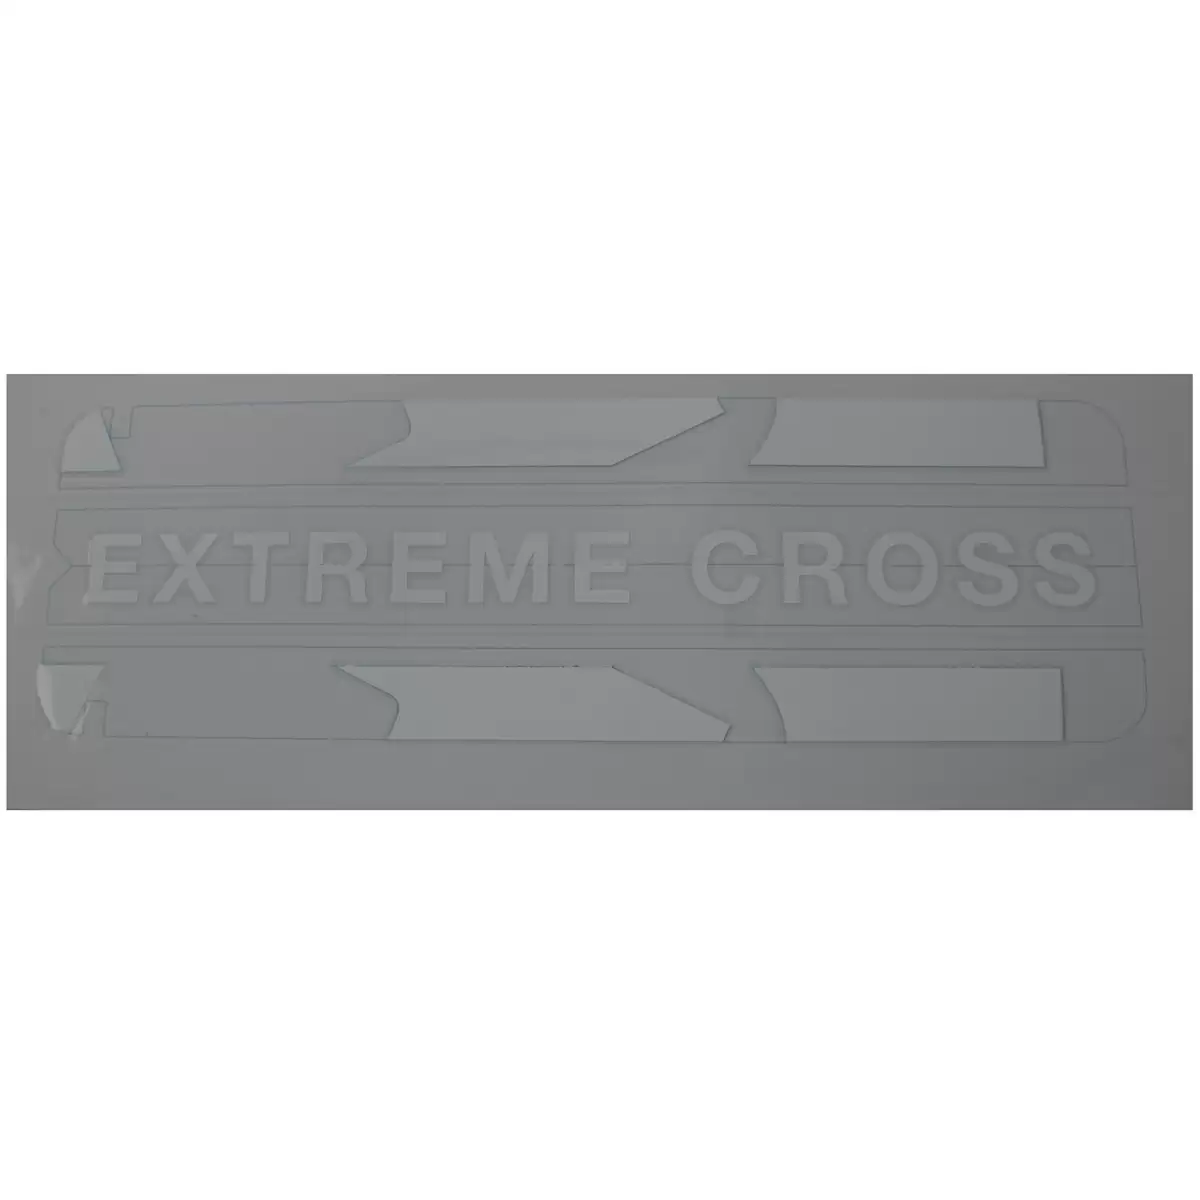 Batteriedeckelaufkleber Extreme Cross weiß - image